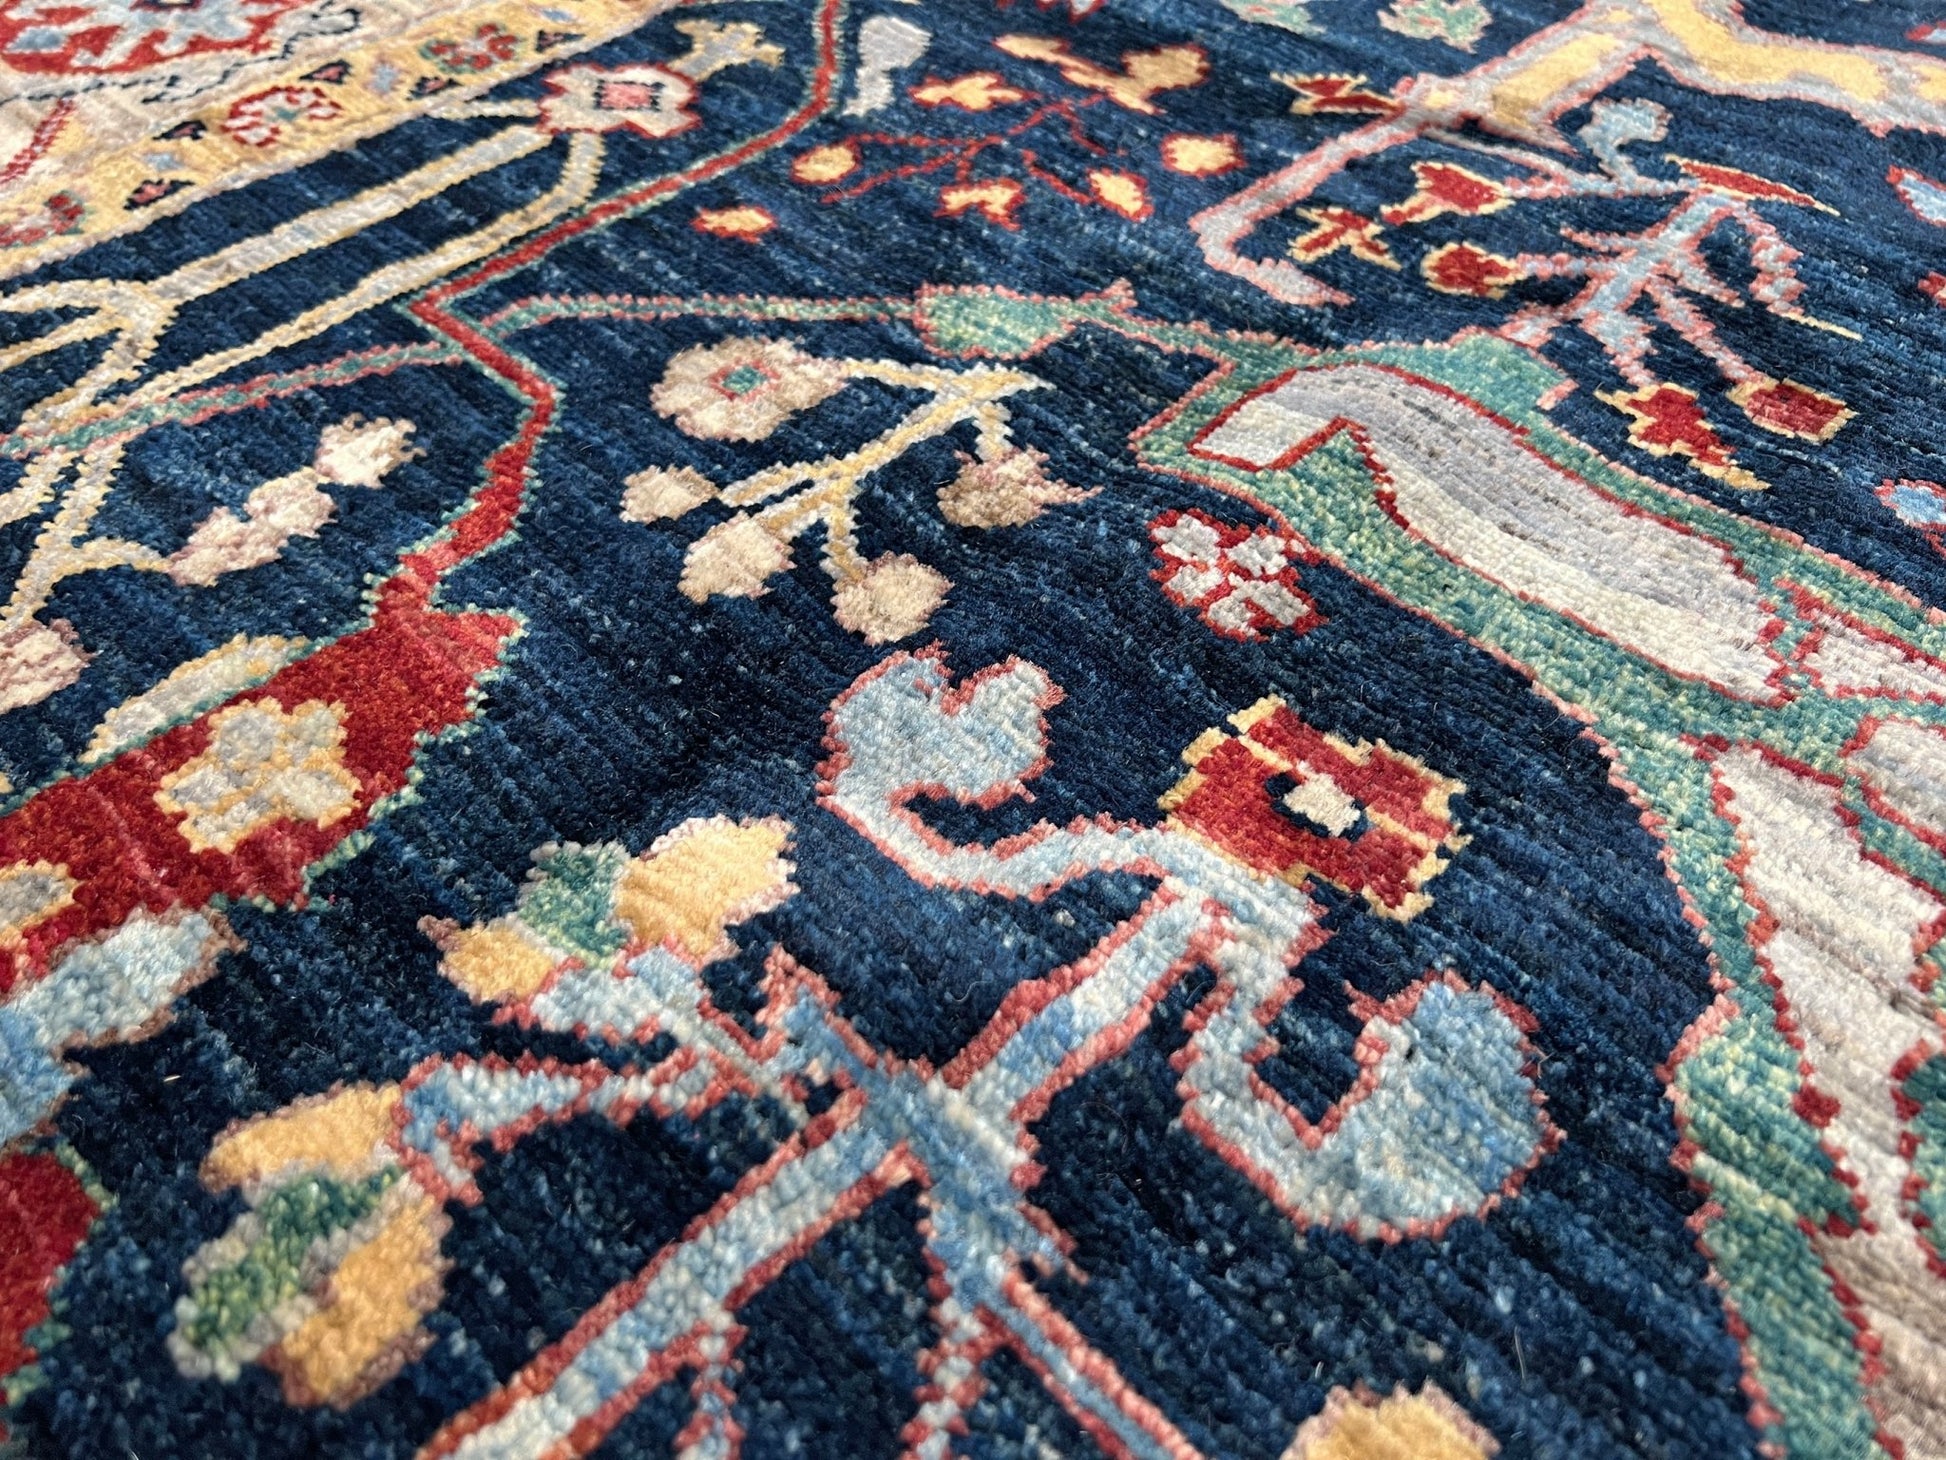 bidjar garrus handmade oriental rug shop san francisco bay area. living room Luxury exquisite rug shop palo alto menlo park